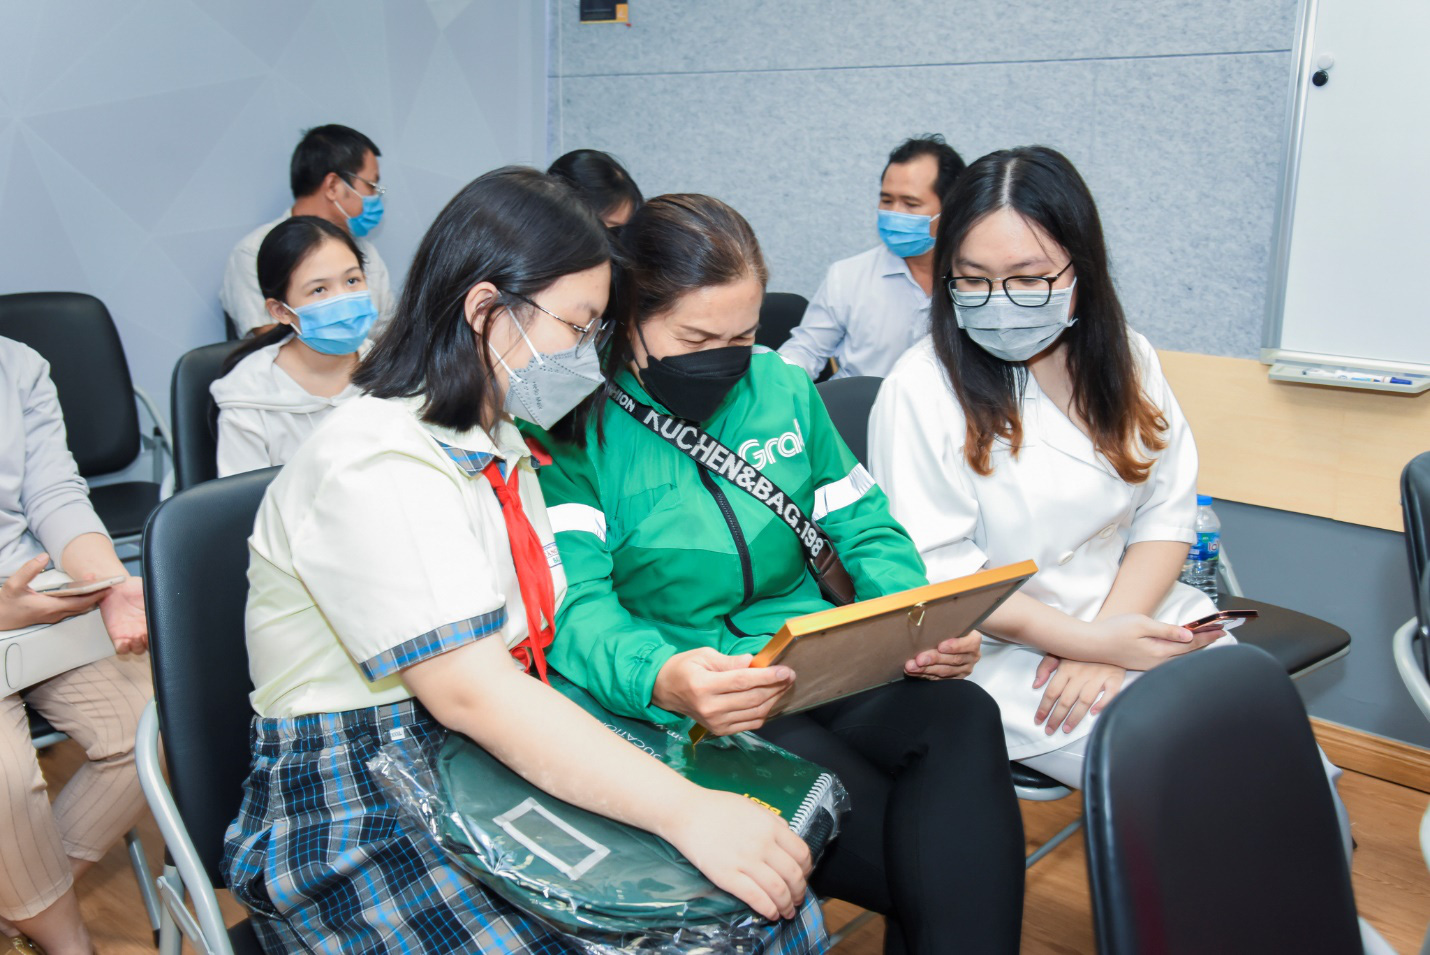 Grab Việt Nam và Everest Education chắp cánh tương lai con em đối tác qua chương trình “Học bổng chồi xanh – Tương lai chắp cánh” - Ảnh 2.